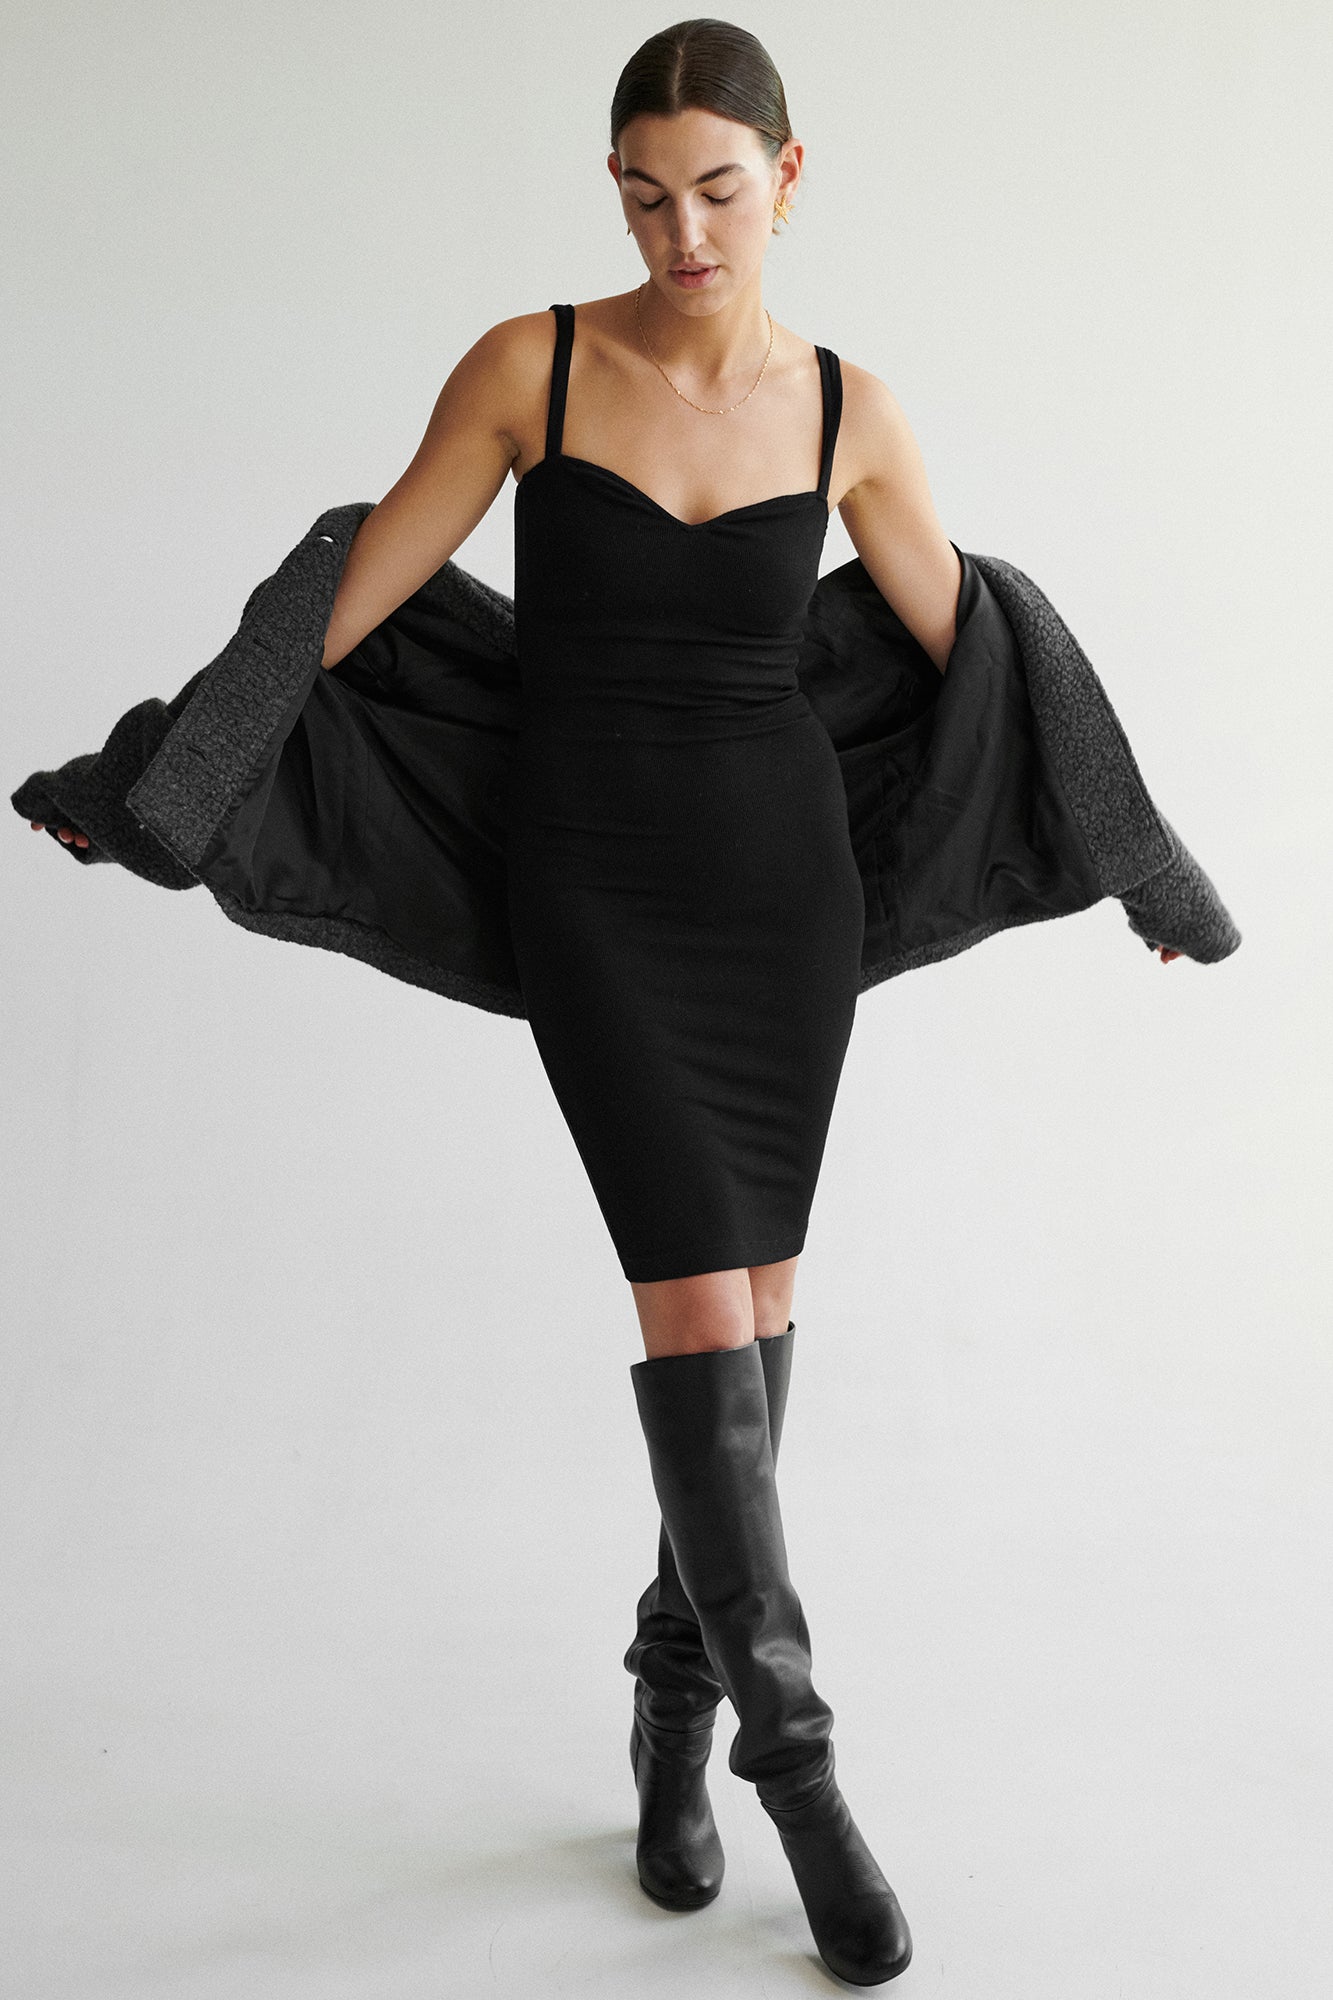 Sukienka z wiskozy / 02 / 33 / onyx black *kurtka-z-welna-18-08-cloud-grey* ?Modelka ma 178 cm wzrostu i ma na sobie rozmiar S?